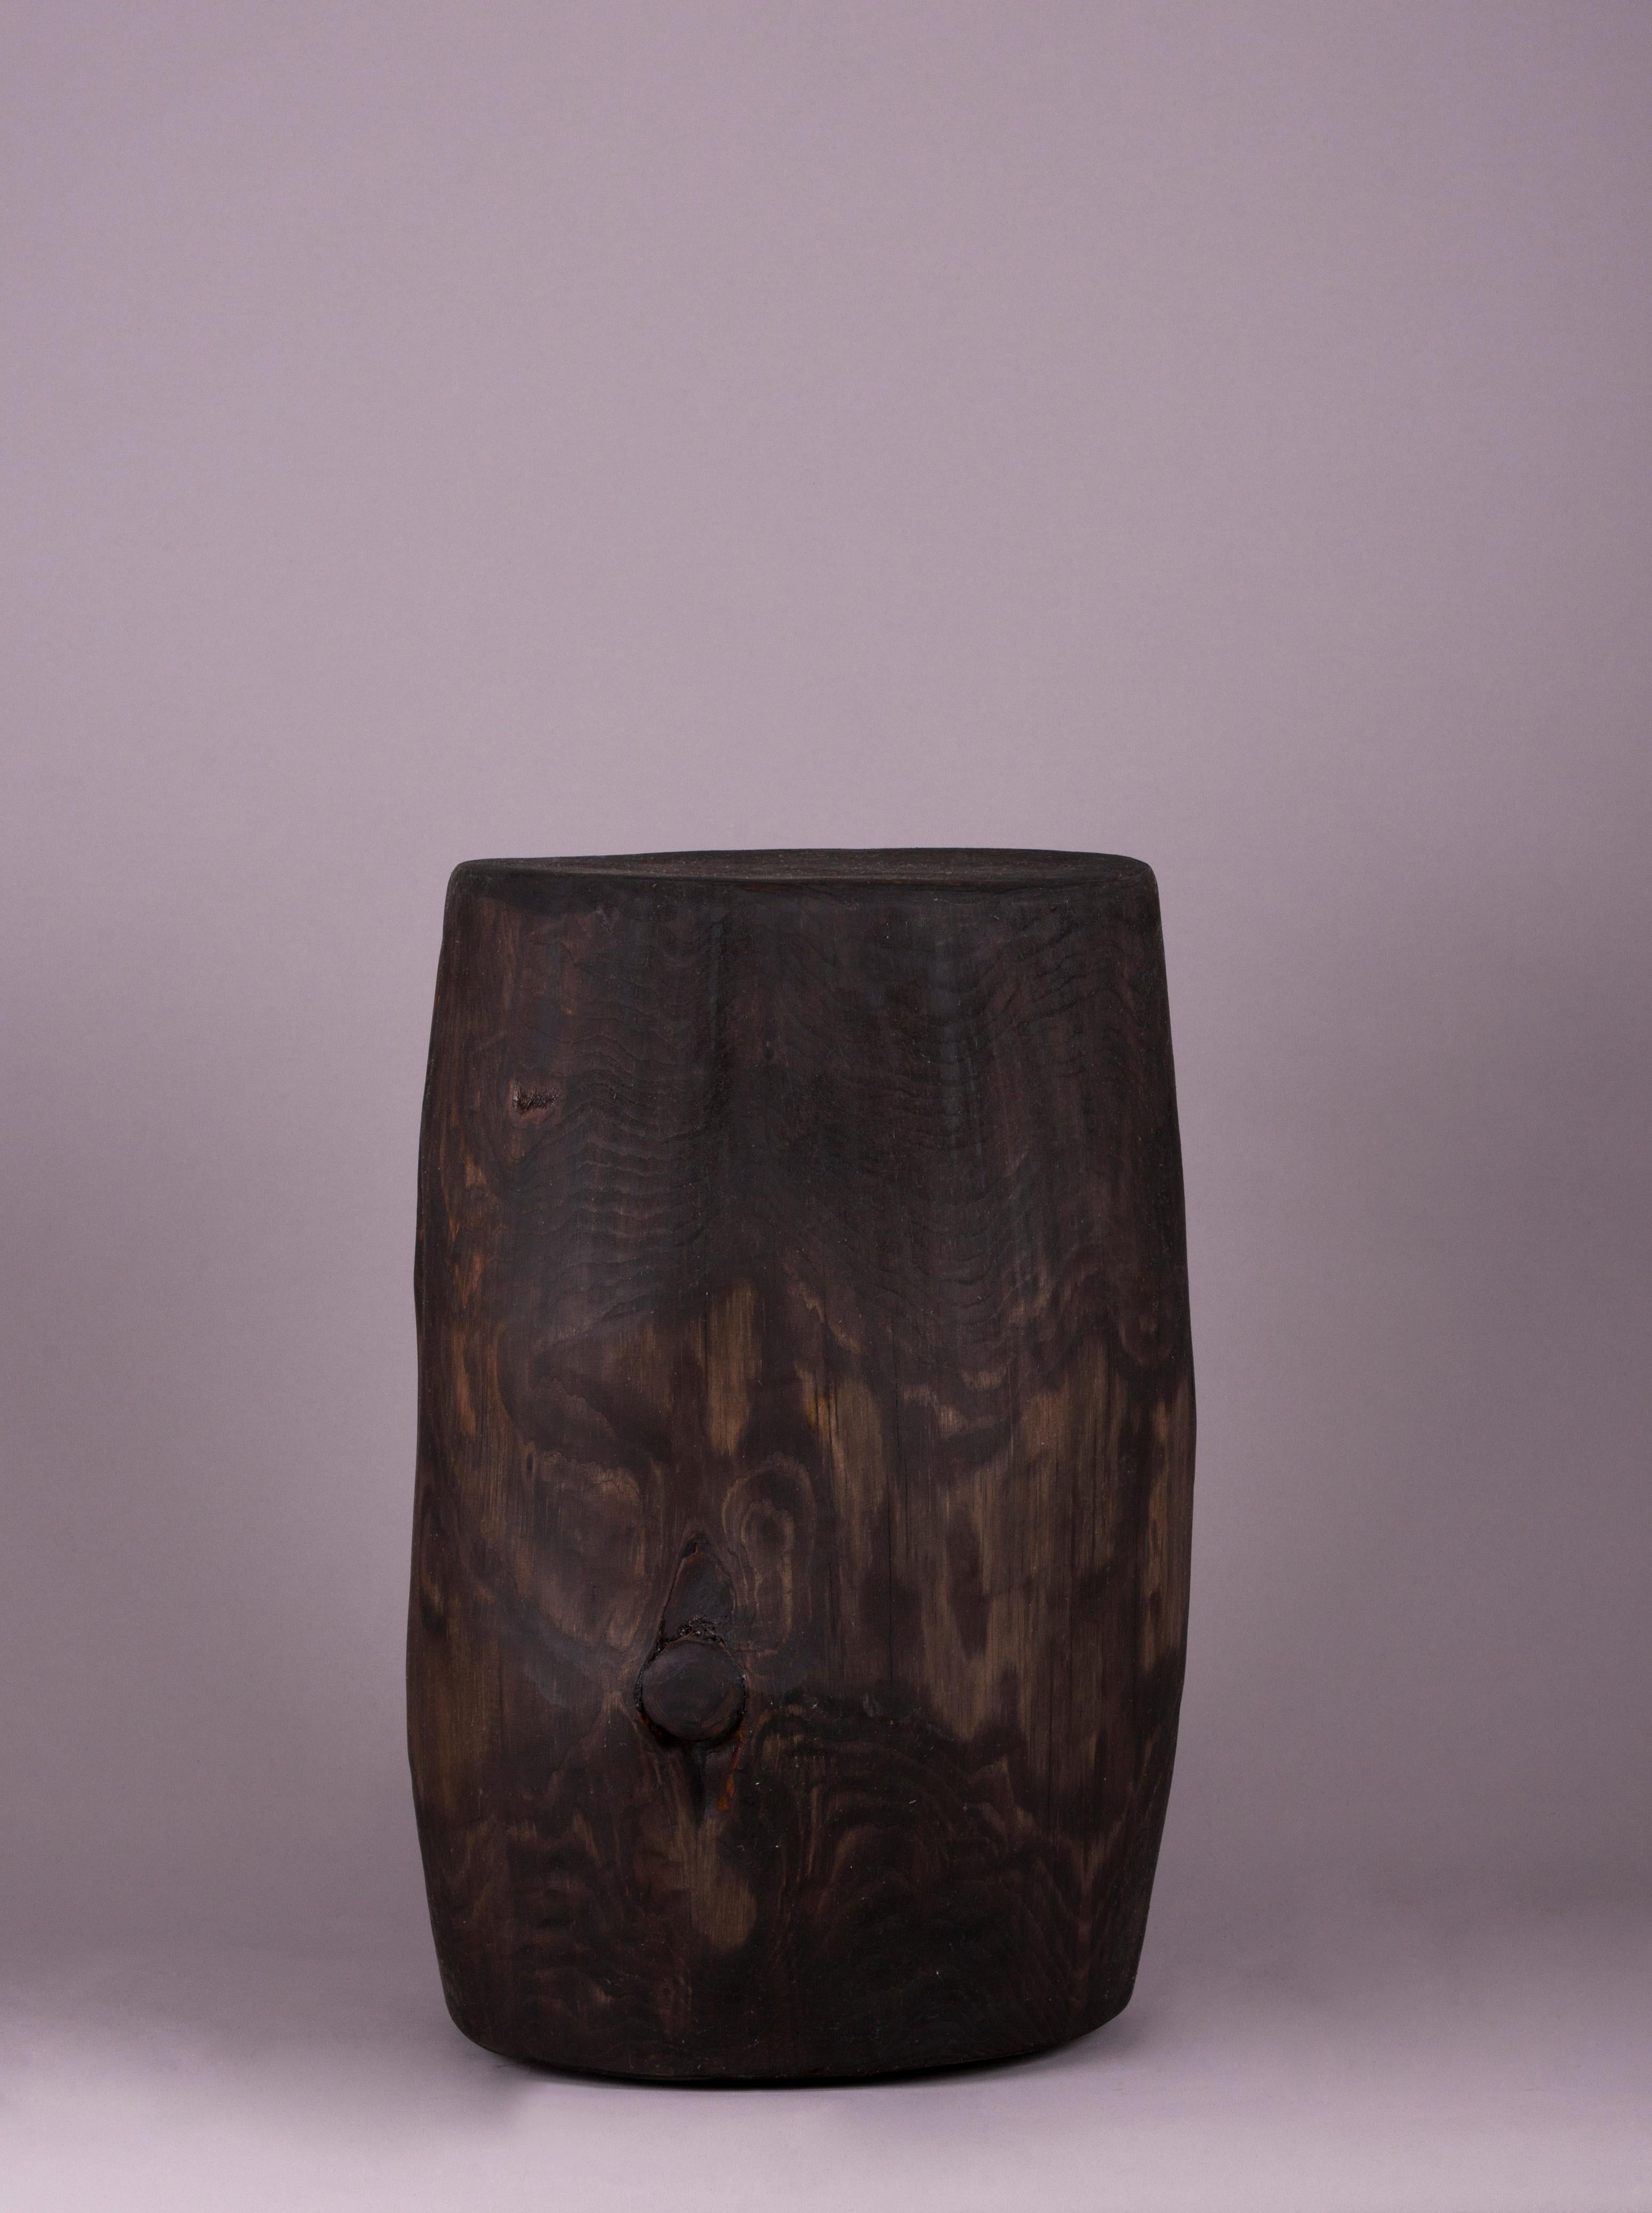 Kabuk couchtisch von Rectangle Studio
Abmessungen: B 27 x H 49 cm 
MATERIALIEN: Massives Kiefernholz, Walnussholzöl

Kabuk ist ein alternatives Produkt mit skulpturalem Aussehen, das mit seiner modernen Struktur sowohl als Couchtisch als auch als